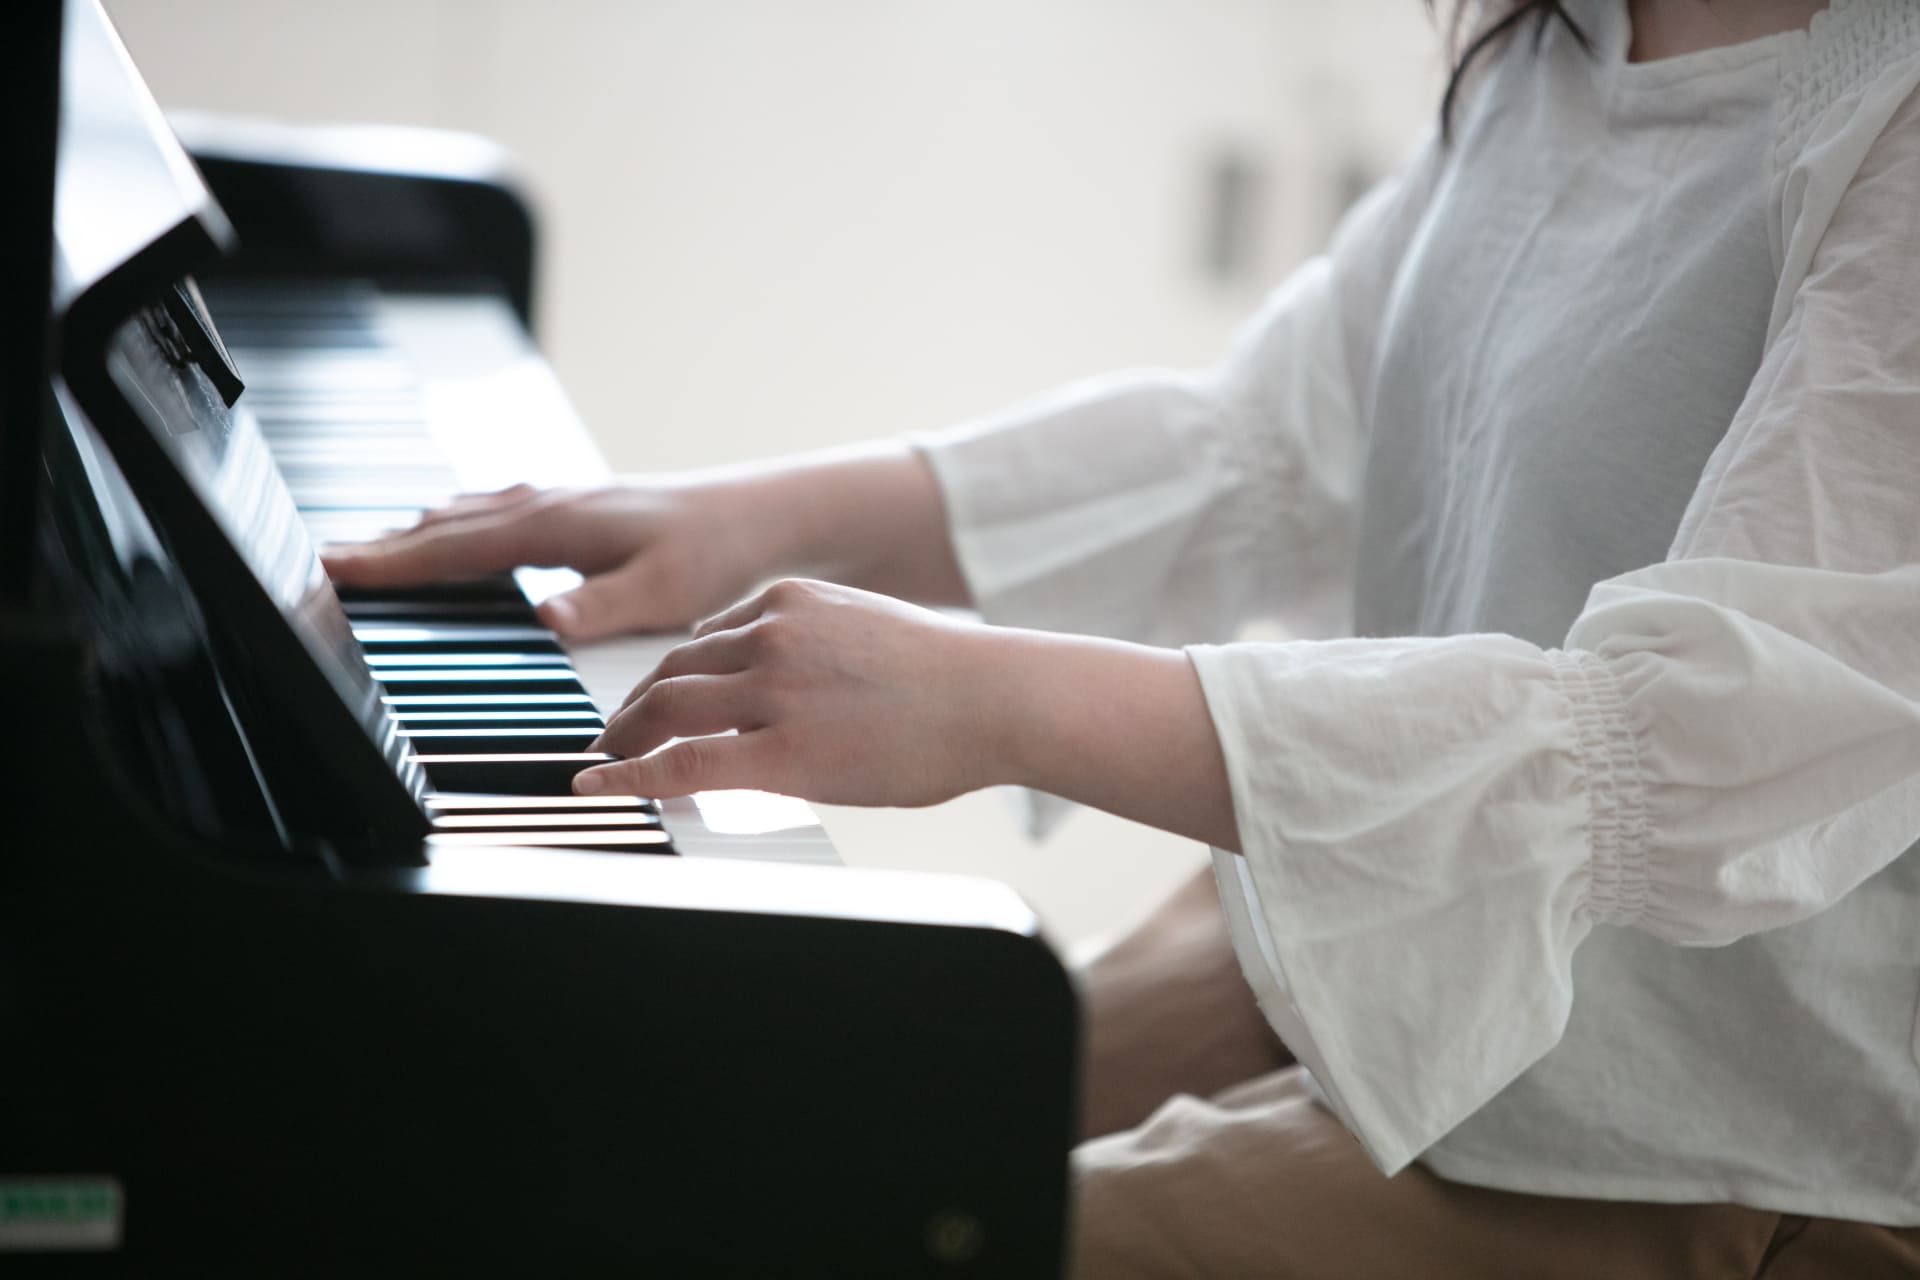 子どもの習い事にはピアノ教室がおすすめ。体験レッスンでチェックすべきポイント、松戸市でおすすめのピアノ教室を紹介